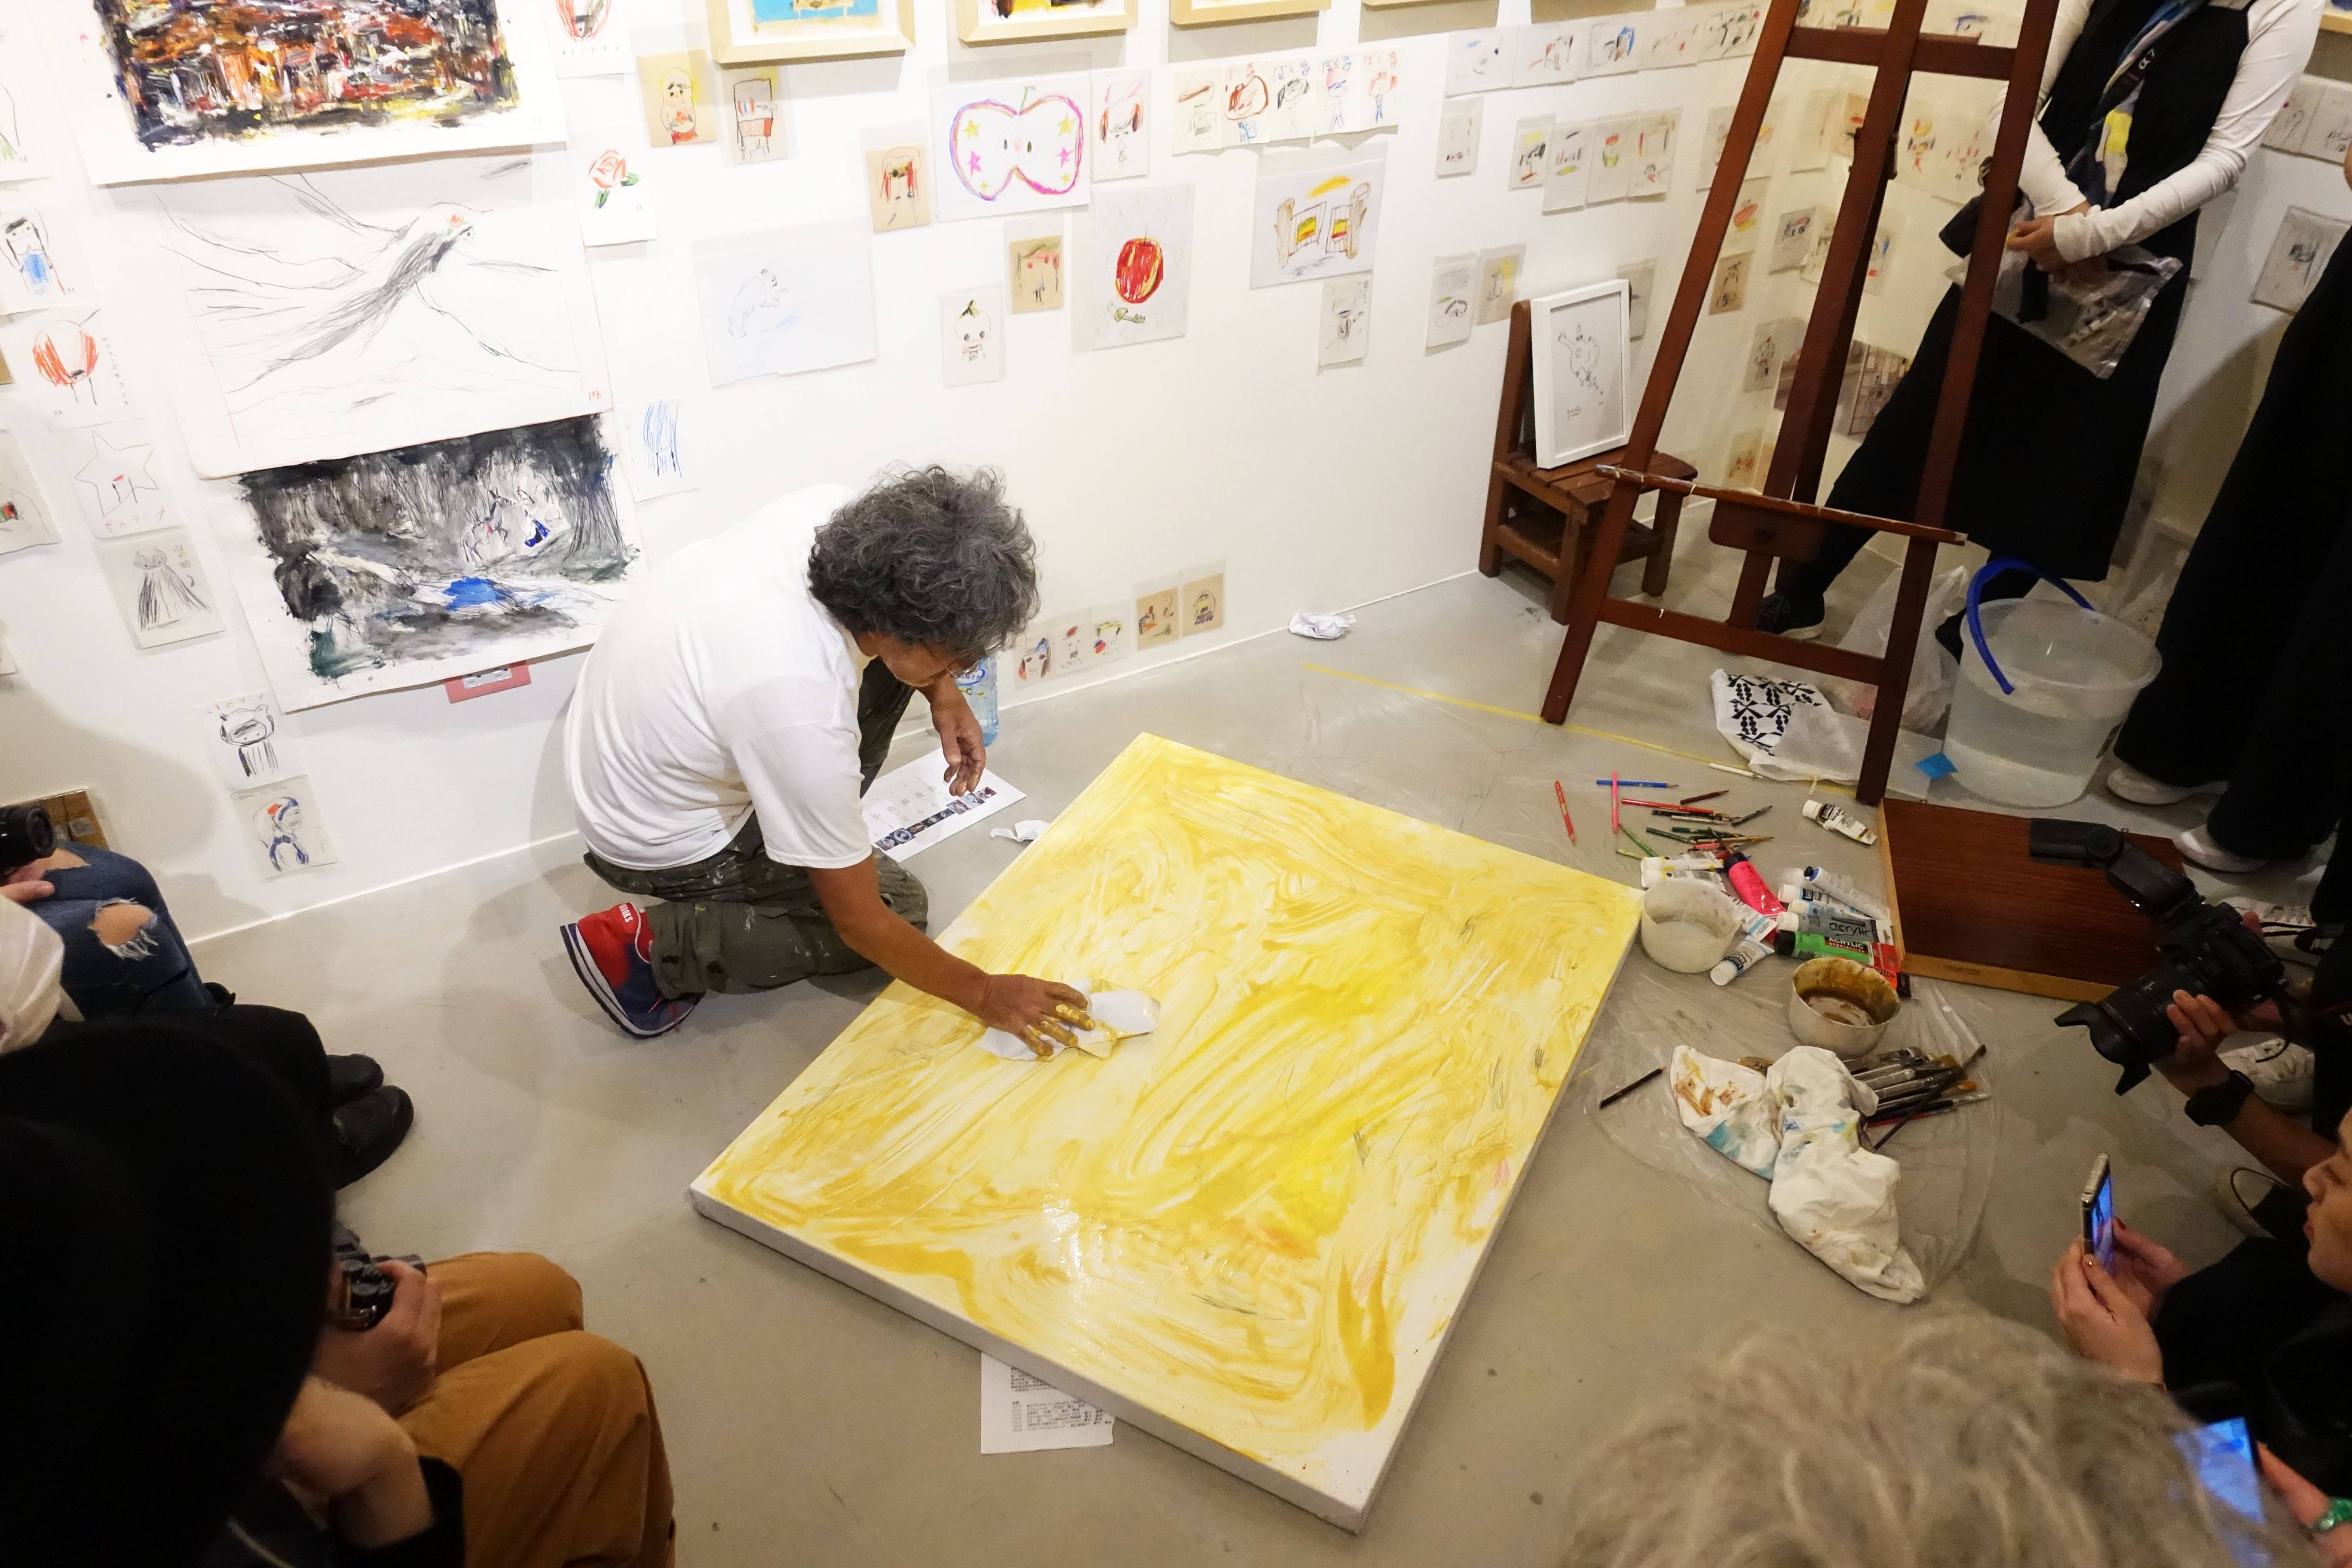 日本插畫繪本藝術家荒井良二先生於荻達寓見現場Live painting。